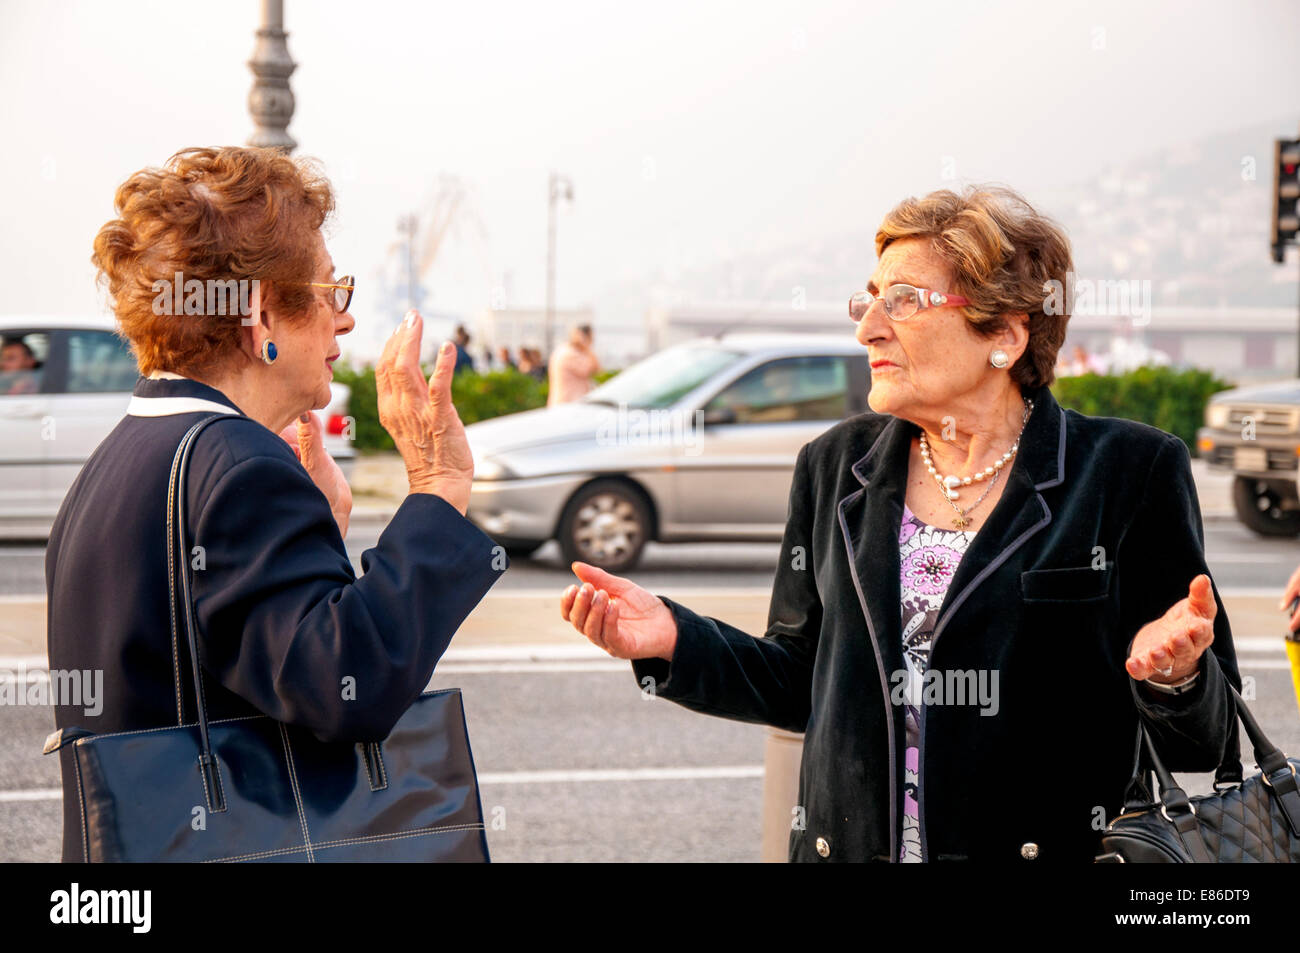 Les femmes italiennes gesticuler en conversation Banque D'Images